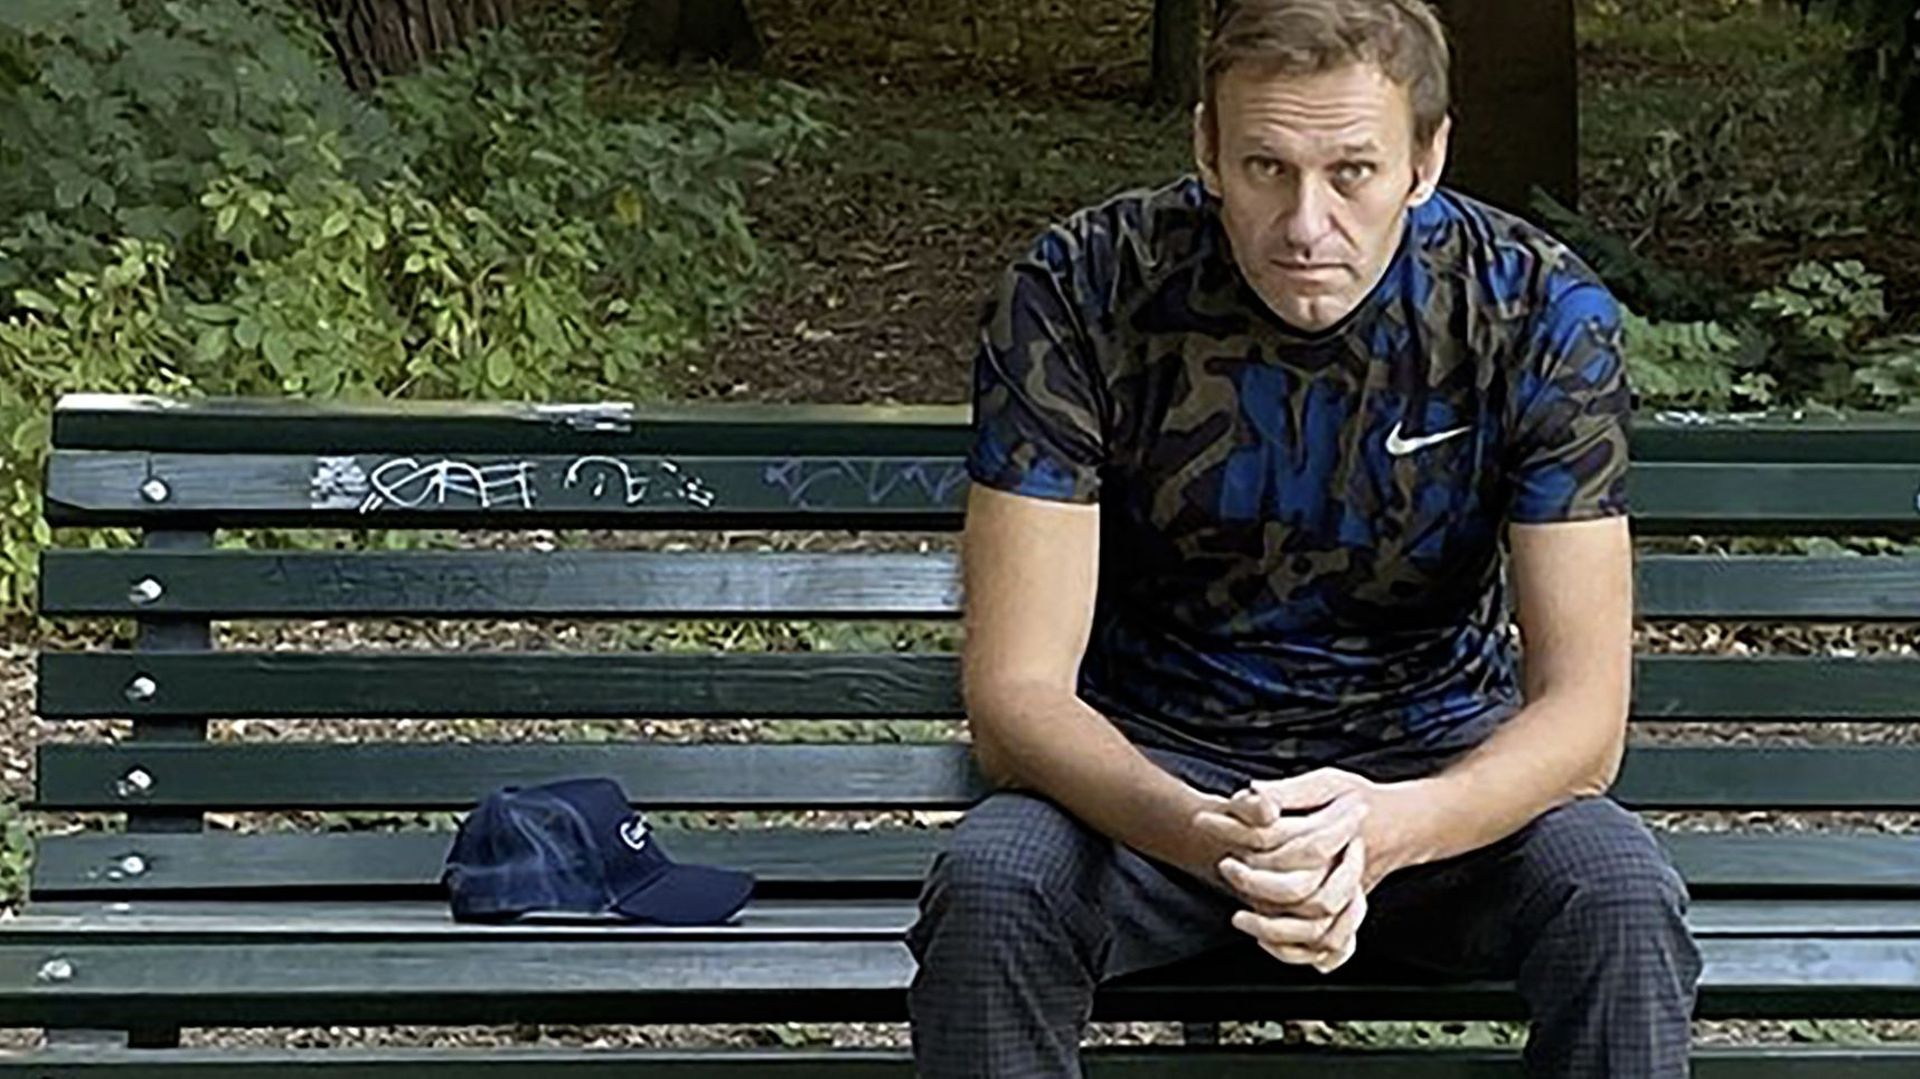 L'opposant russe Alexeï Navalny sur un banc à Berlin, en septembre 2020